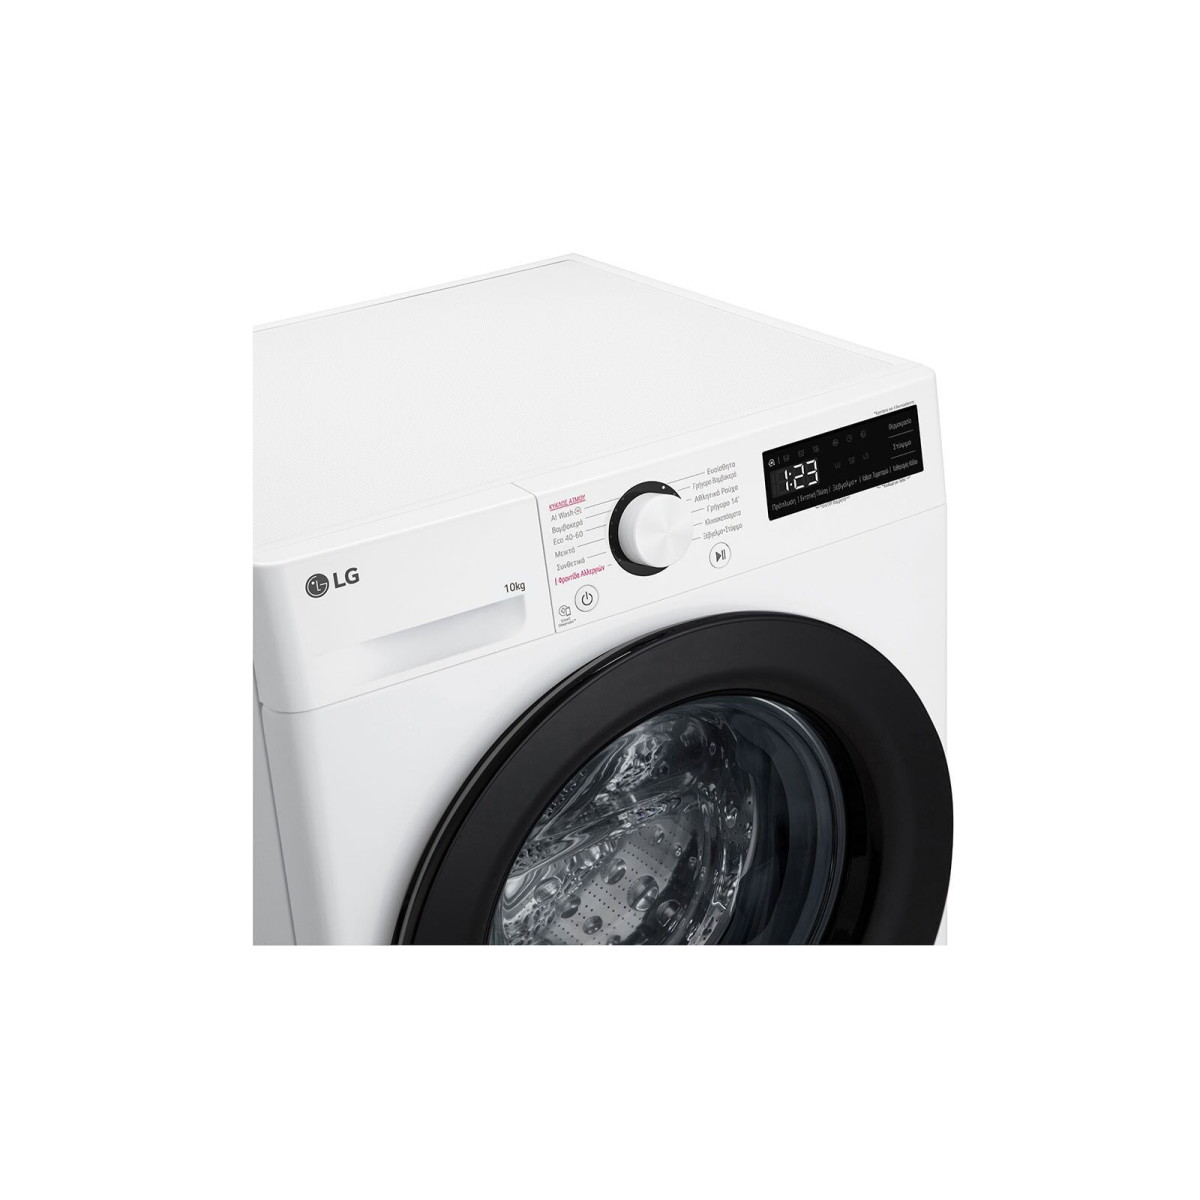 Πλυντήριο Ρούχων LG F4R3010NSWB 10kg 1400 Στροφών Πλυντήρια ρούχων